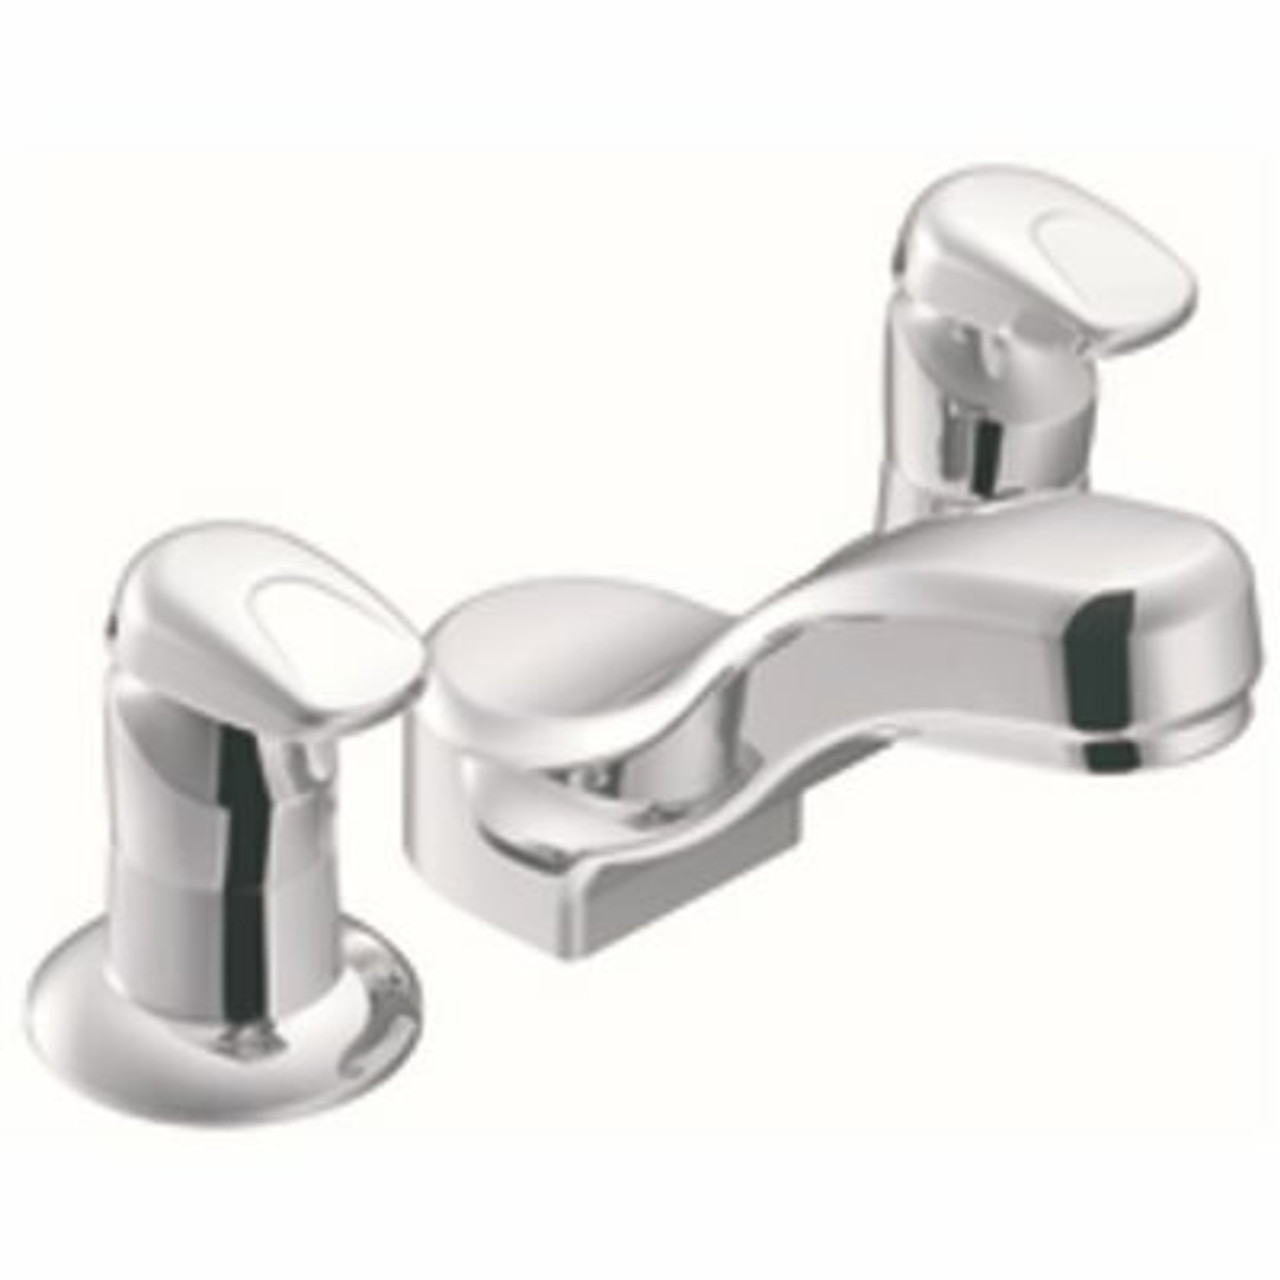 Moen M-Press 8 In. Widespread Double Handle Metering Bathroom Faucet In Chrome